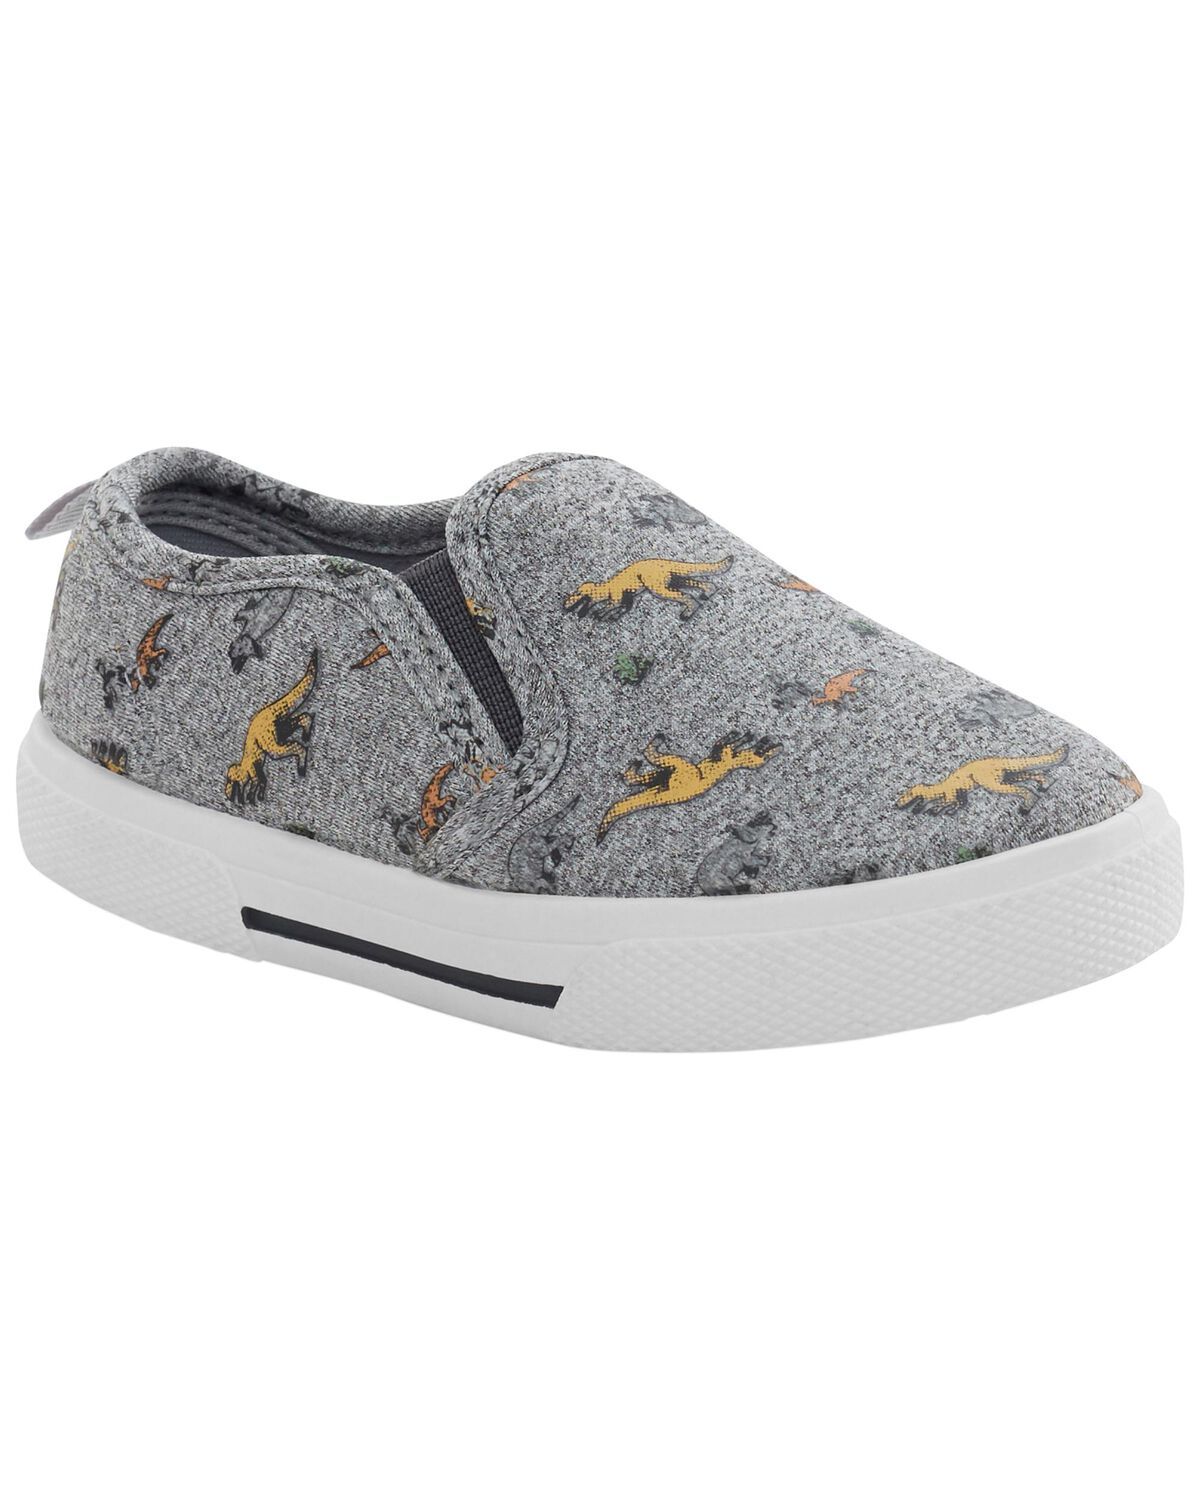 Toddler Dinosaur Slip-On Sneakers | Carter's